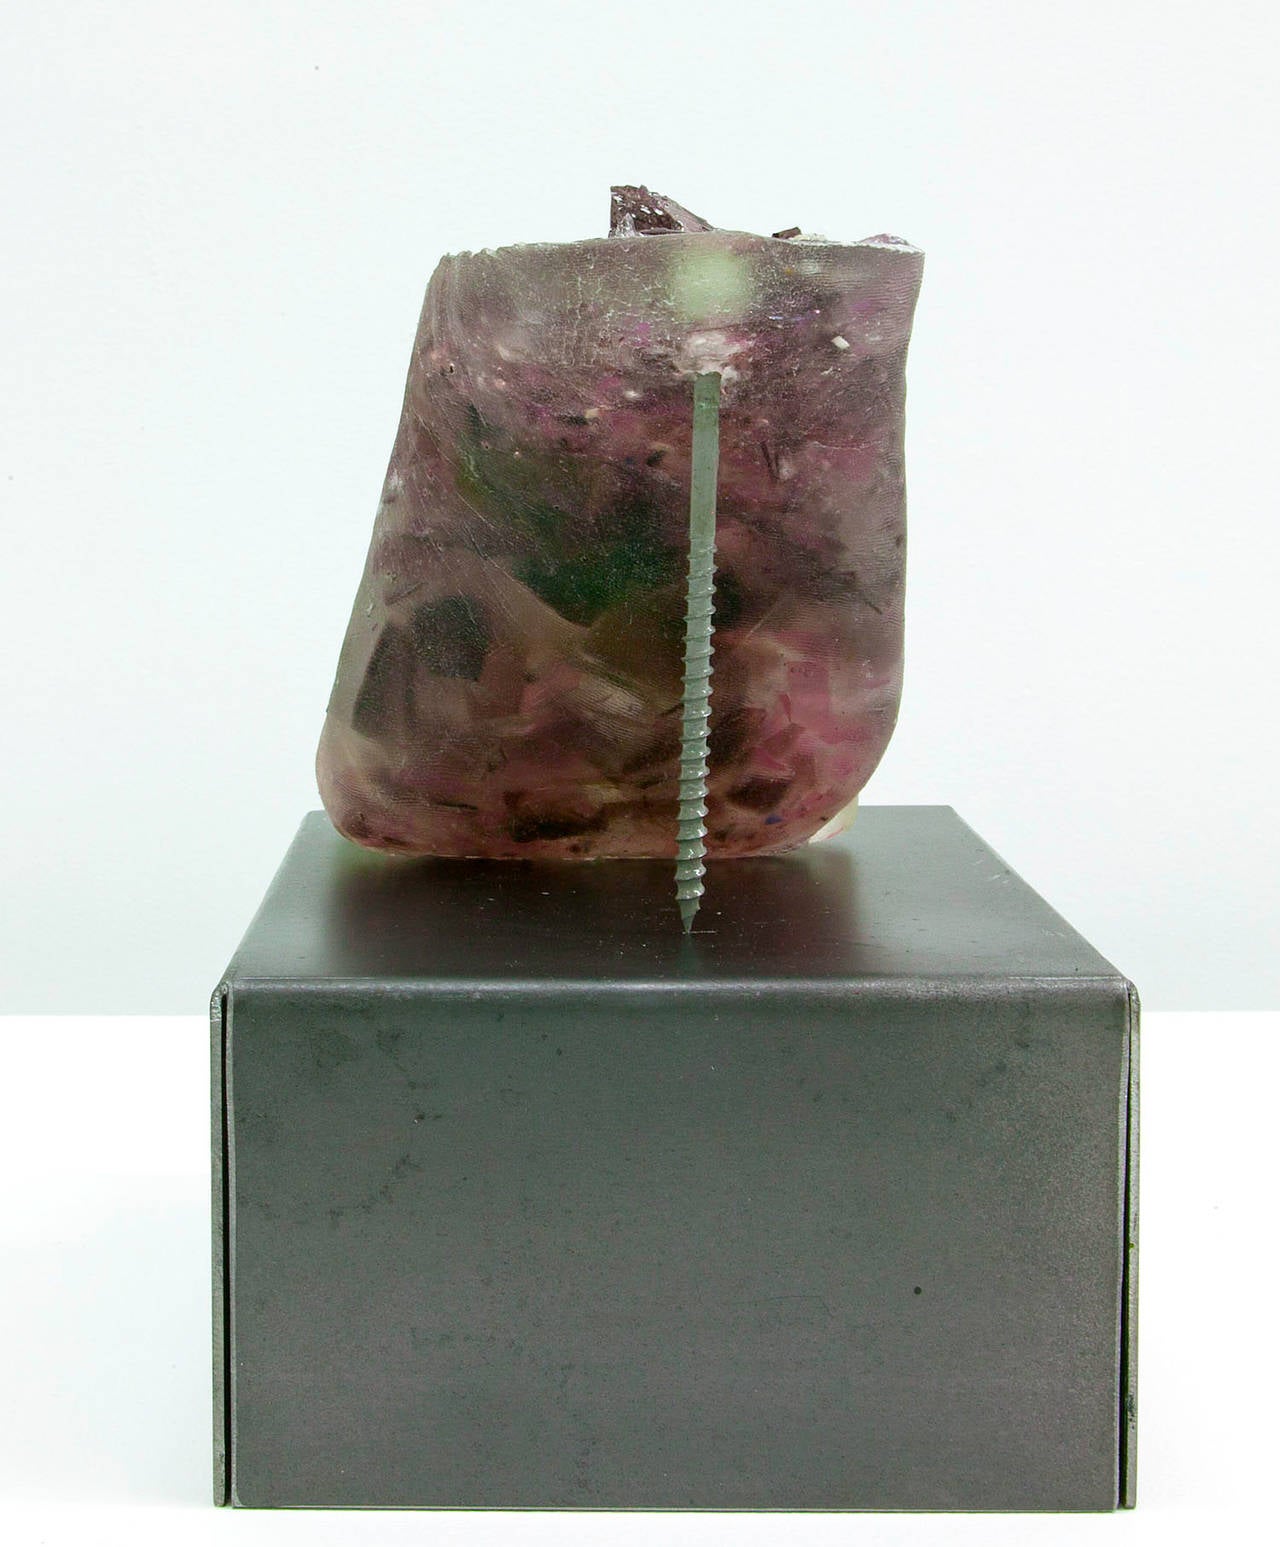 Footwear (Purple Heel) - Gray Figurative Sculpture by Rachel Owens